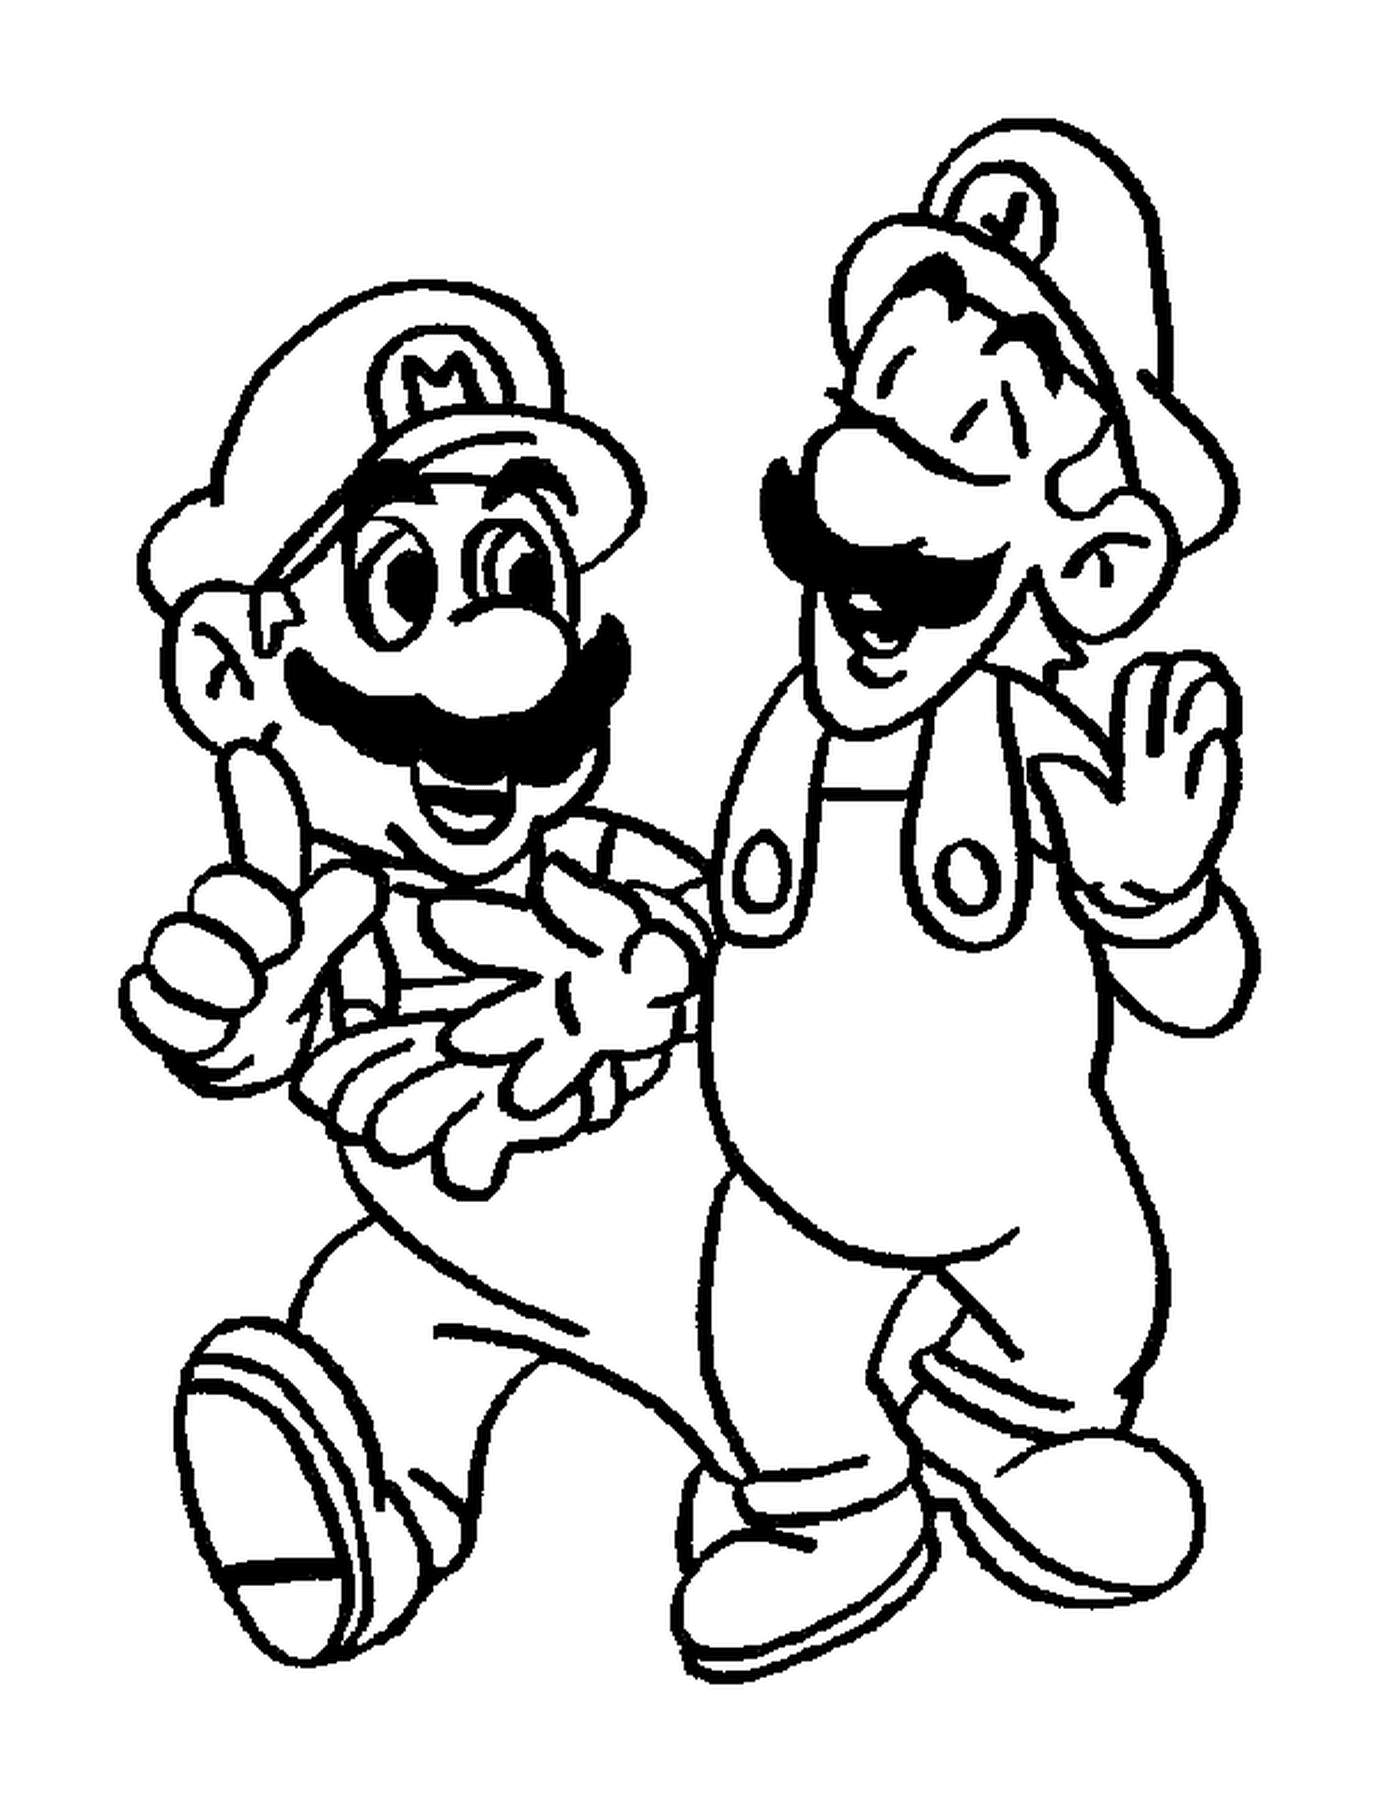  Luigi und Mario, zwei unzertrennliche Brüder 